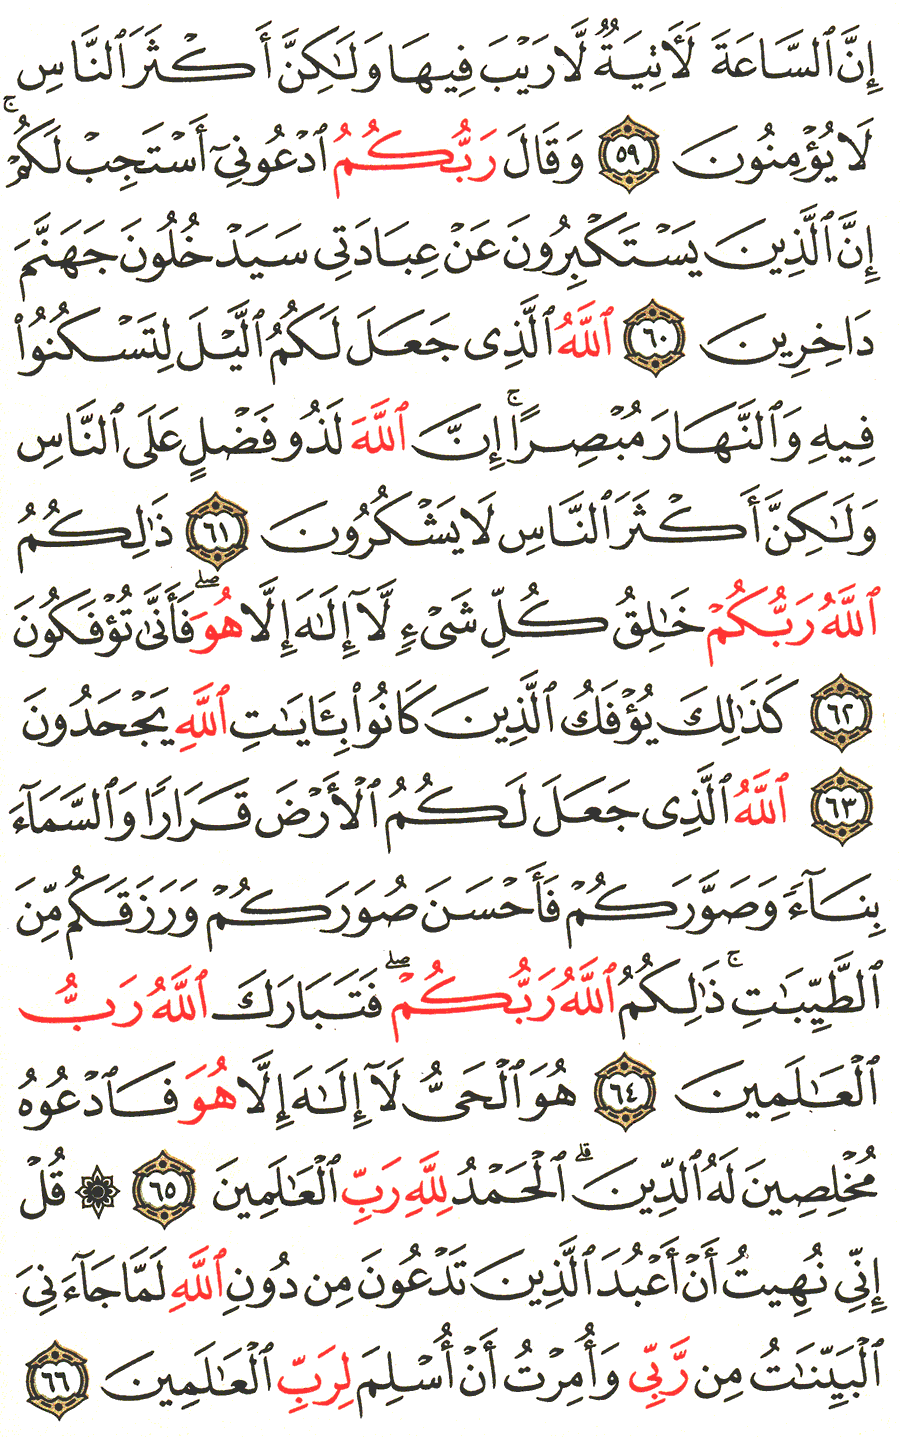 الصفحة 474 من القرآن الكريم